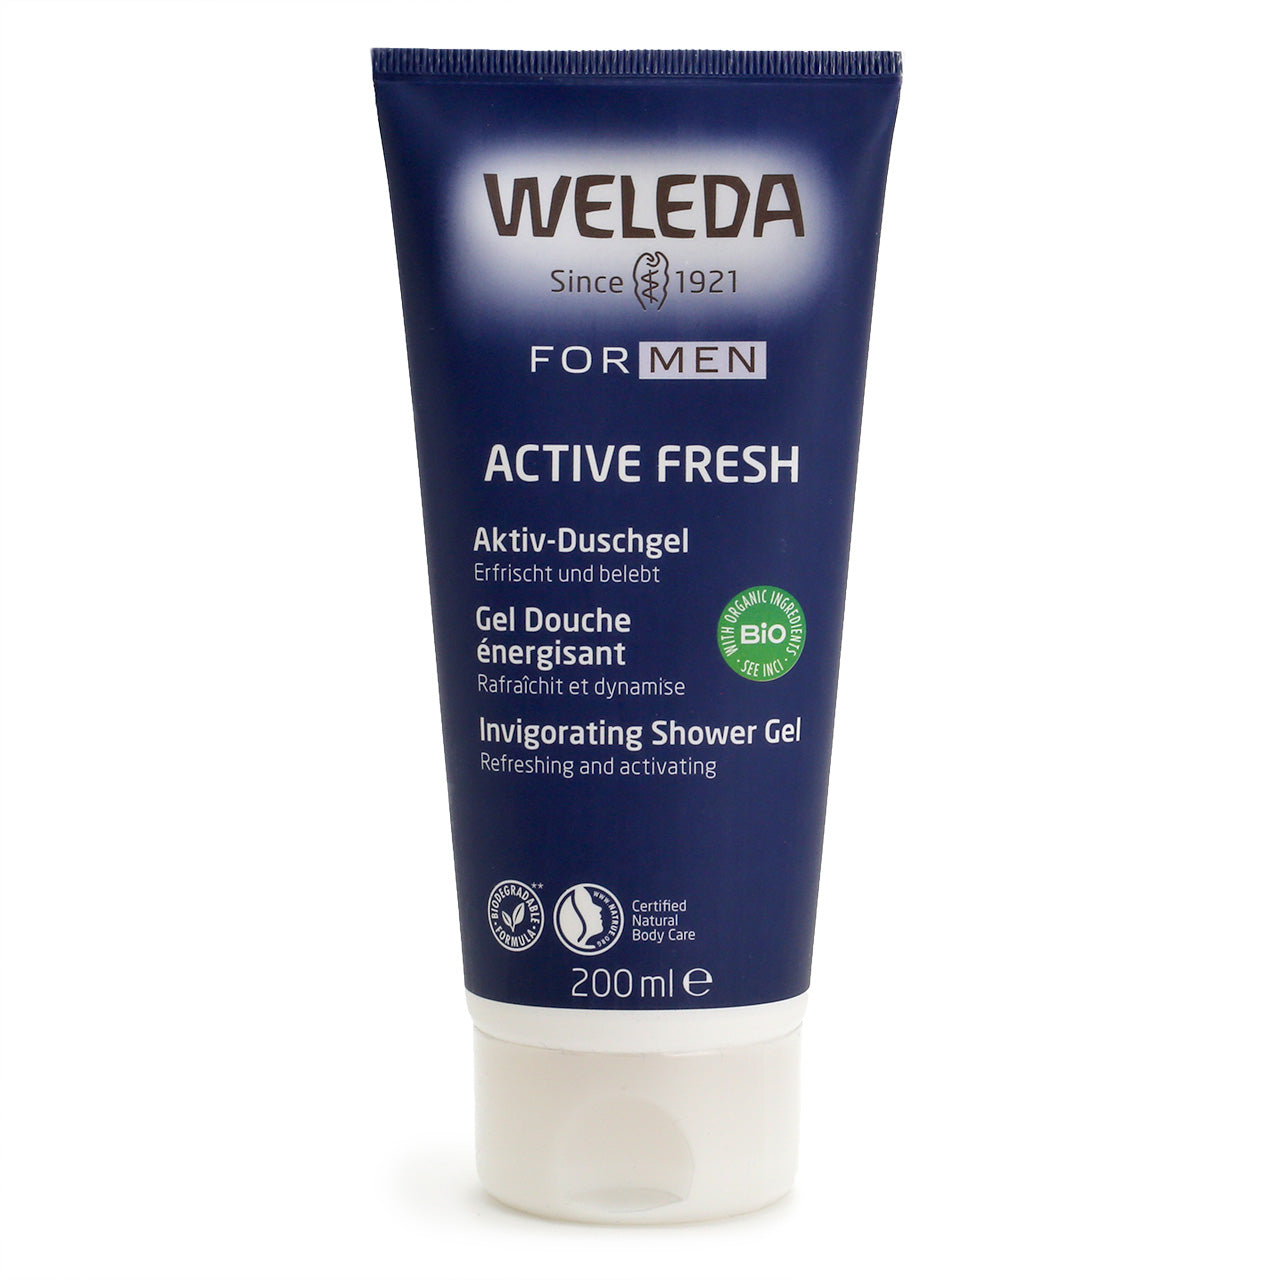 Weleda For Men Shower Gel tube, dark blue with white cap